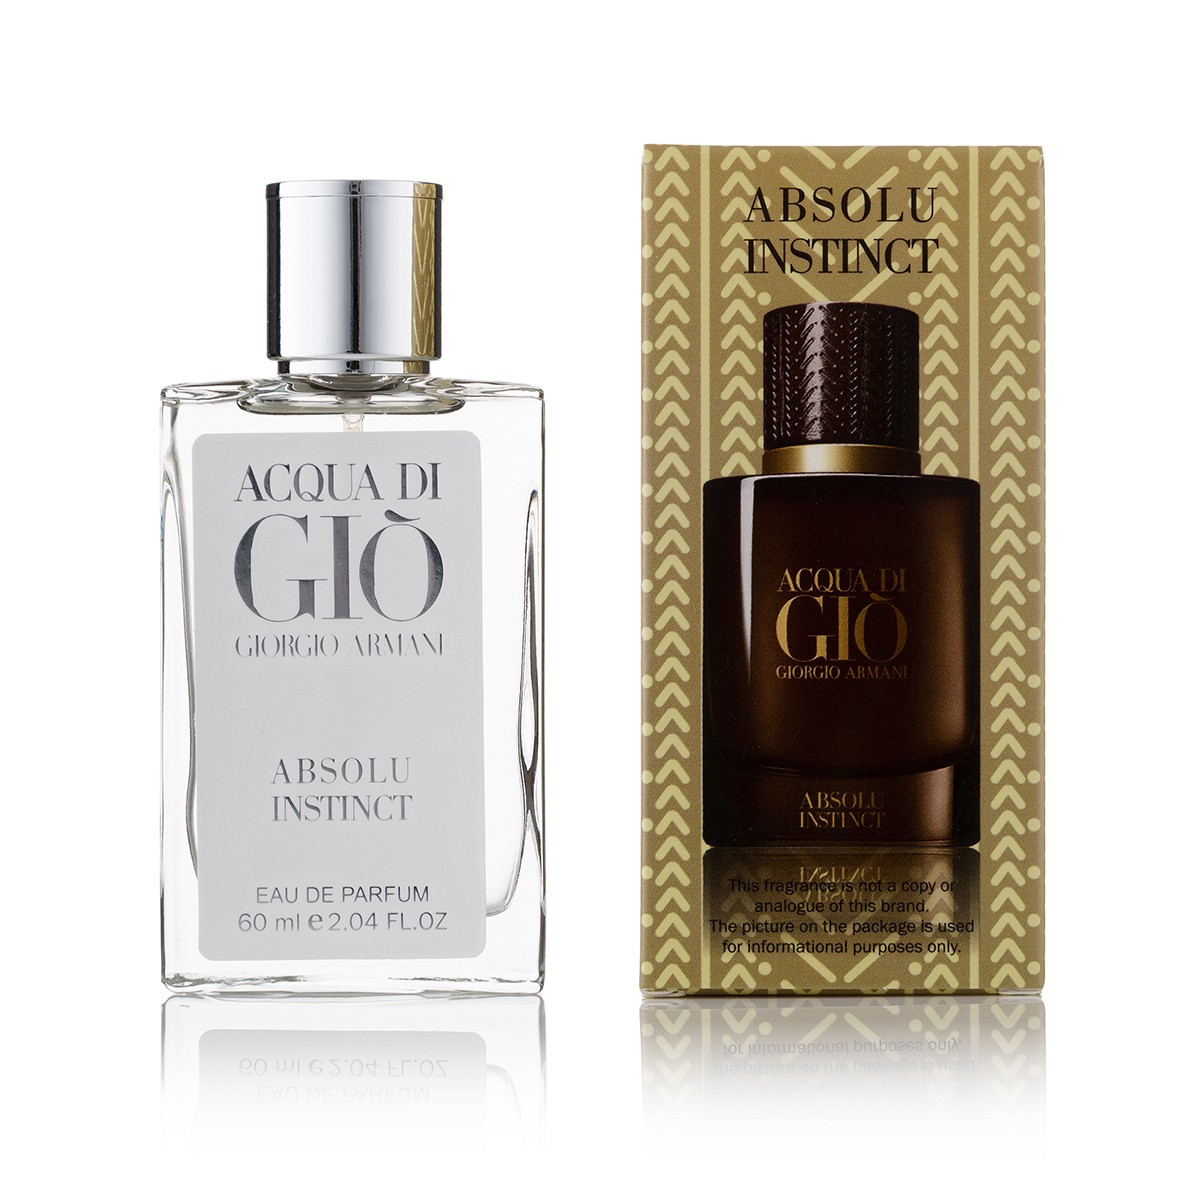 Чоловічі парфуми  Giorgio Armаni Acqua di Gio Absolu Instinct -  Spray 60ml парфюм Люкс